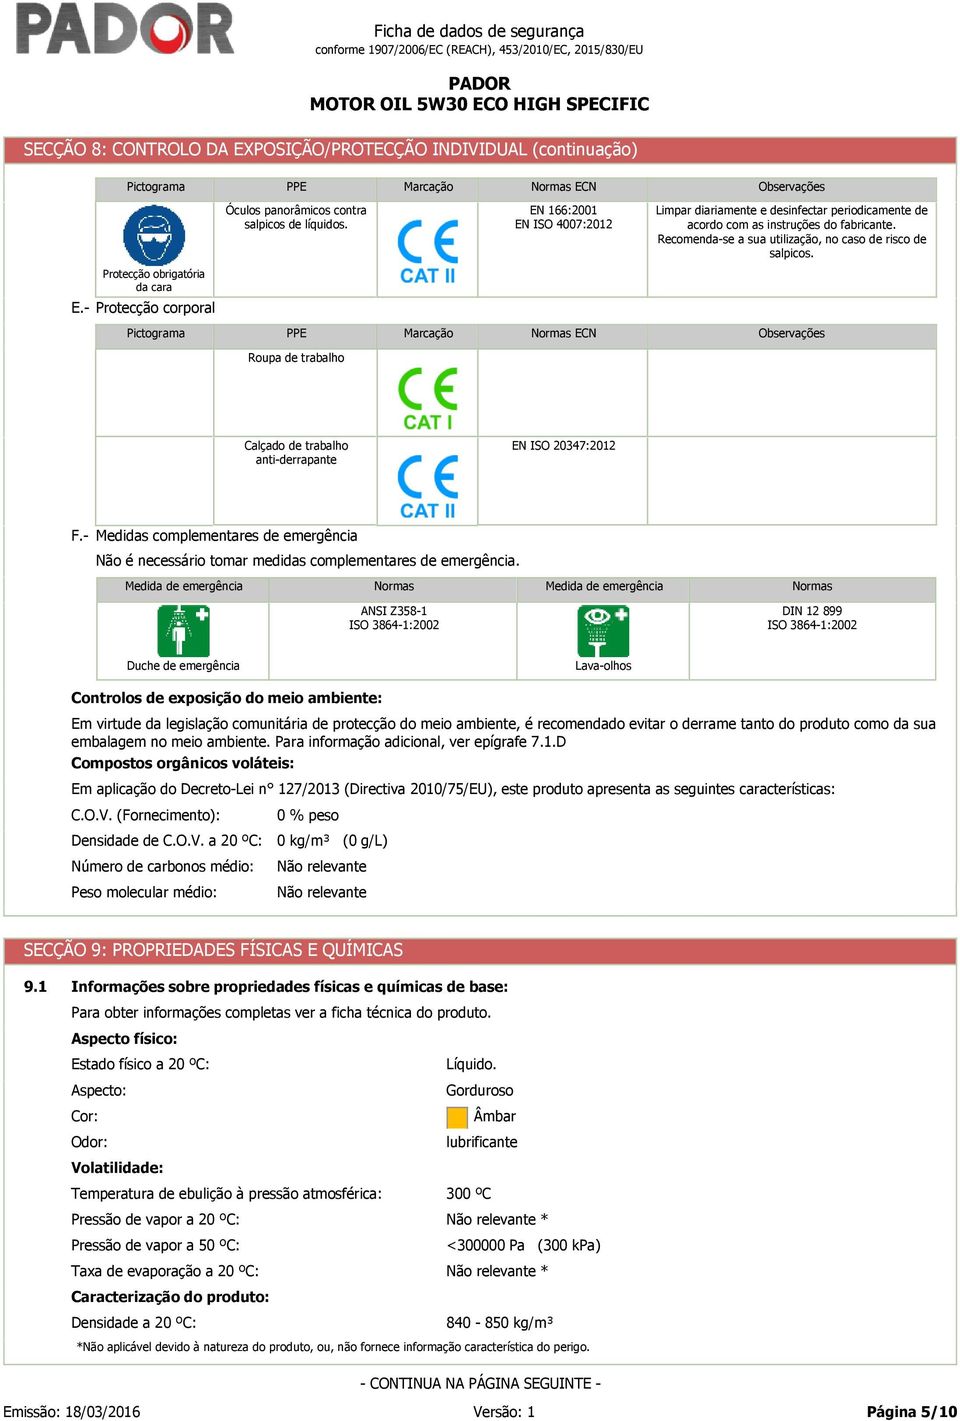 Protecção obrigatória da cara E.- Protecção corporal Pictograma PPE Marcação Normas ECN Observações Roupa de trabalho Calçado de trabalho anti-derrapante EN ISO 20347:2012 F.